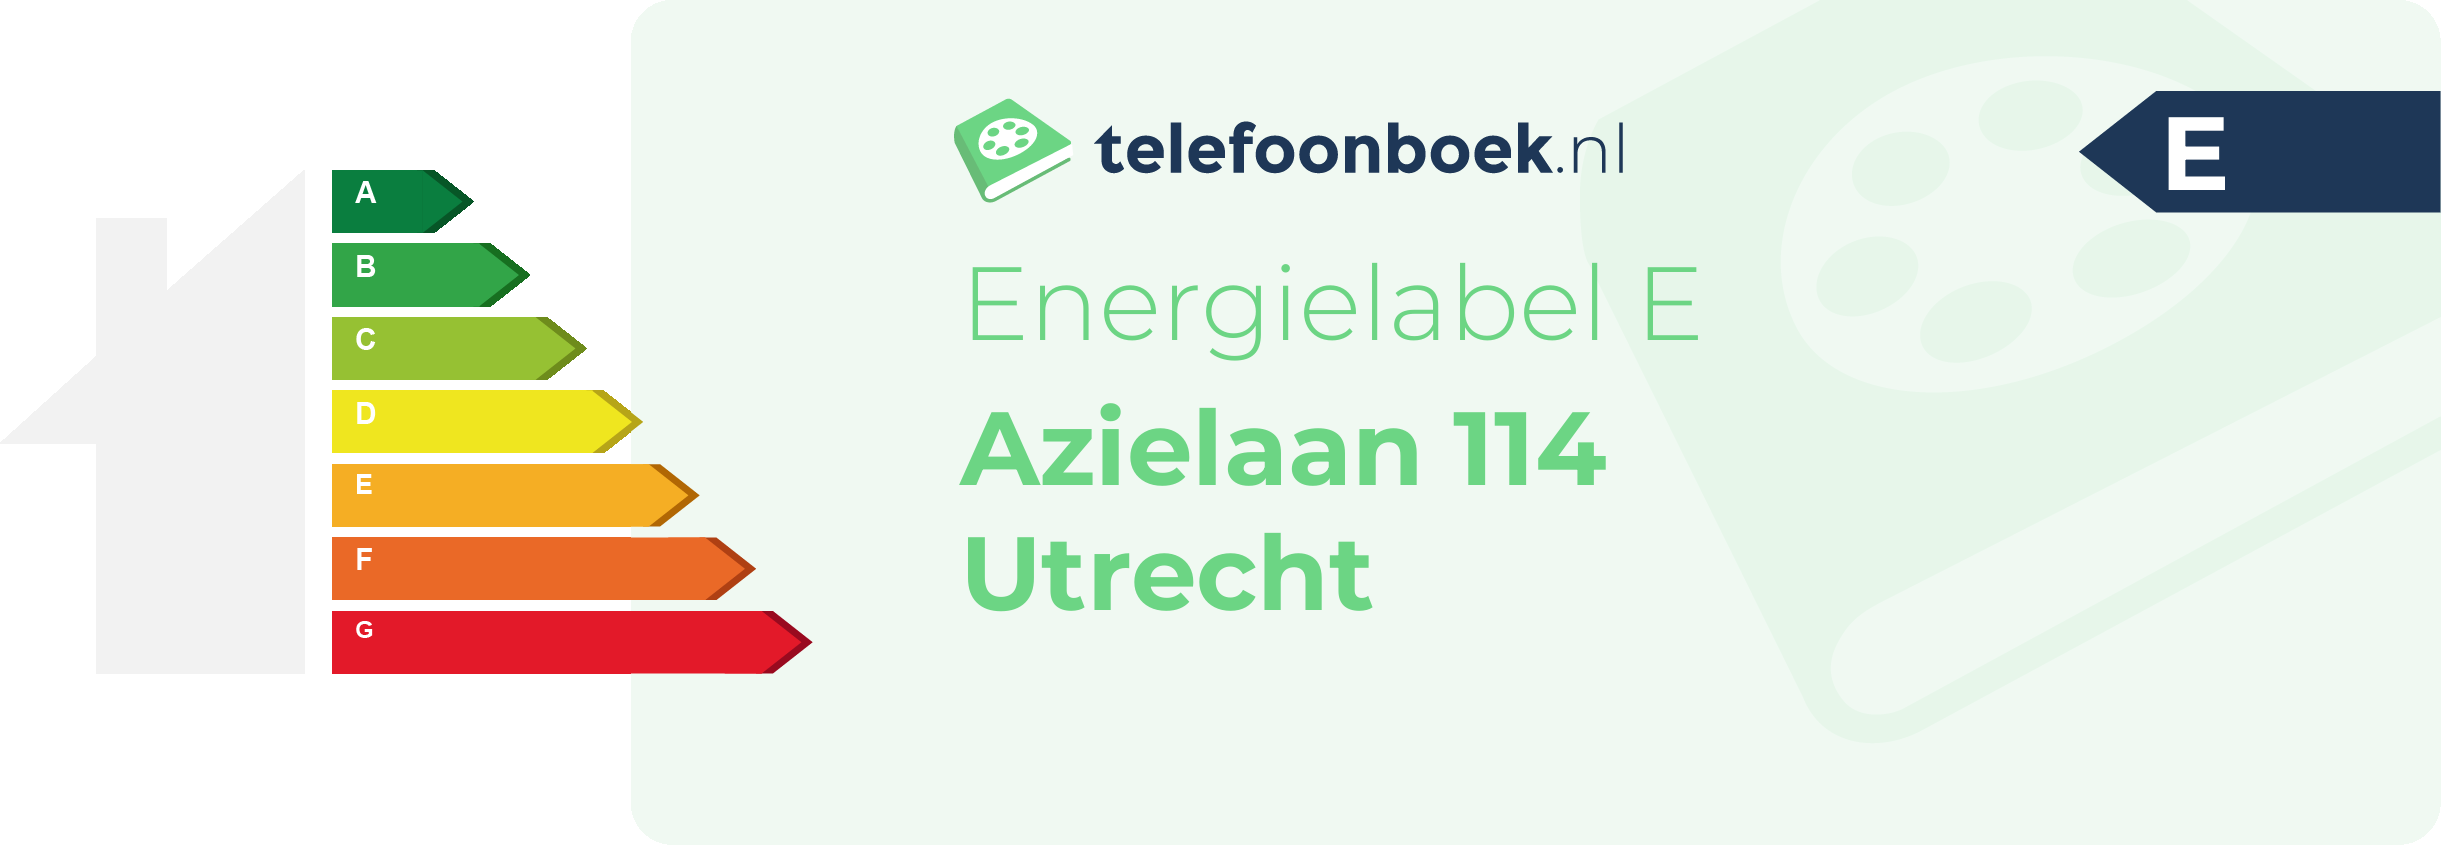 Energielabel Azielaan 114 Utrecht